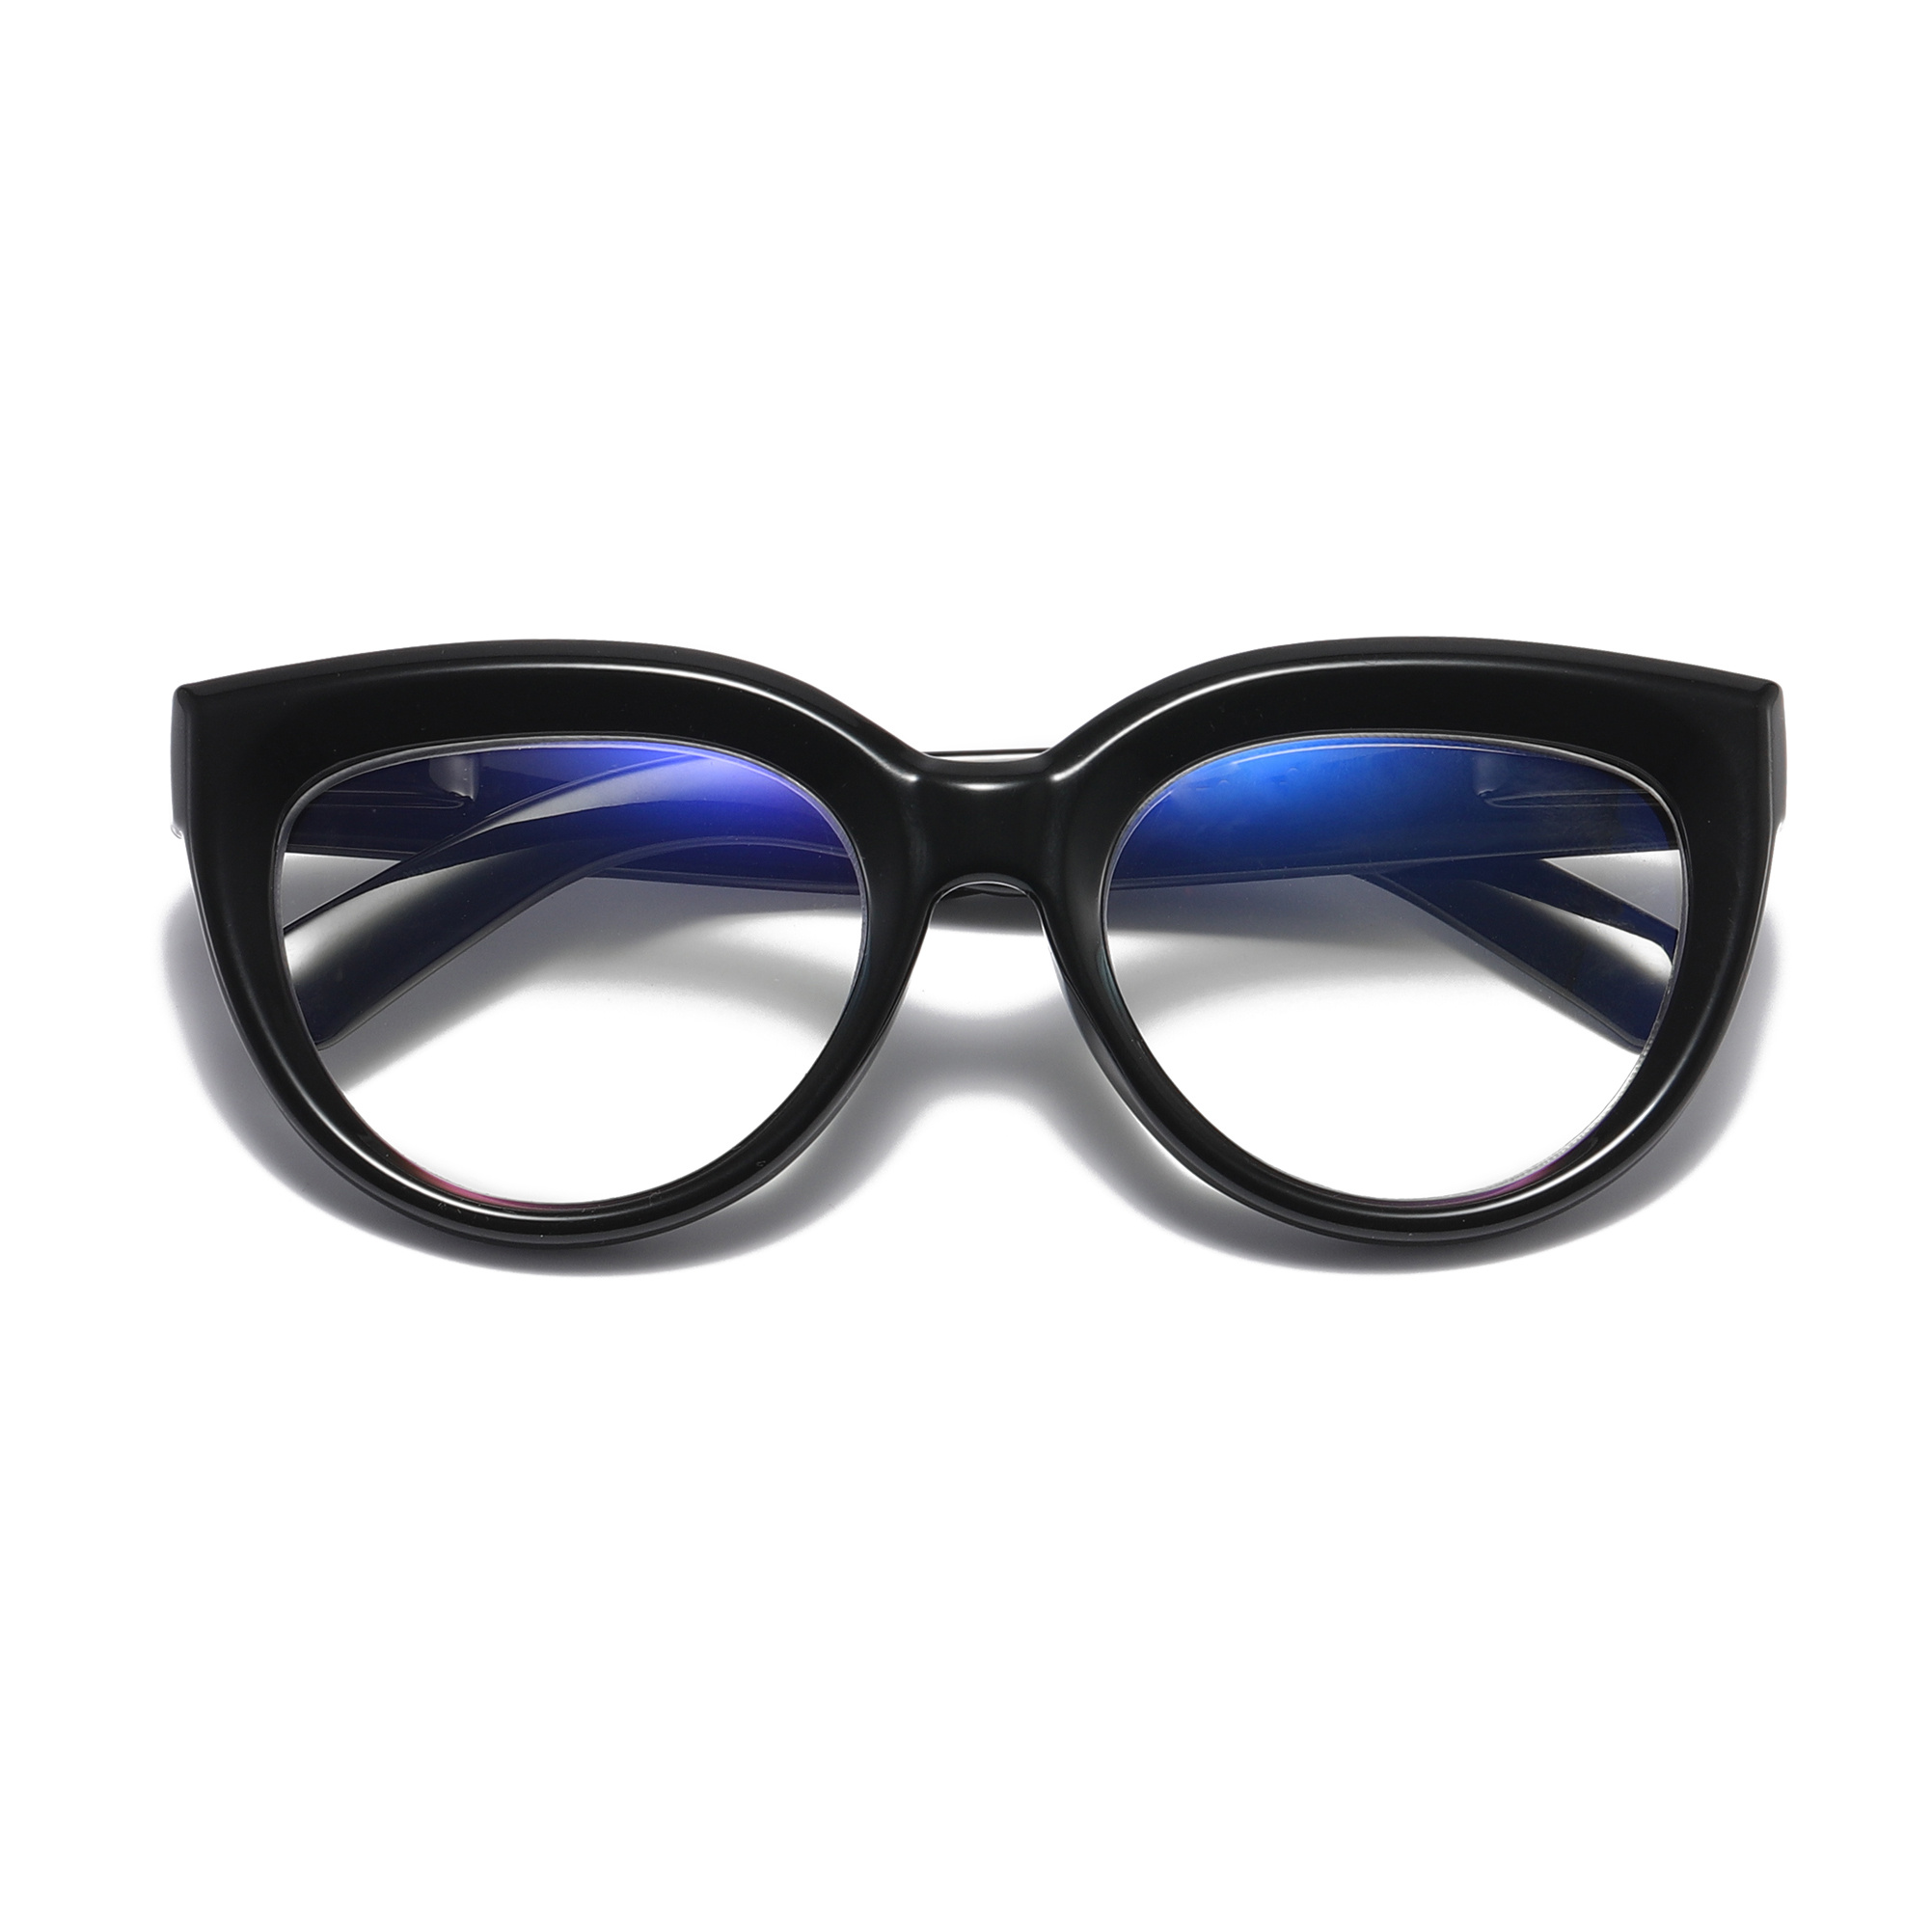 Buy Tromsø Black Blue light glasses online –